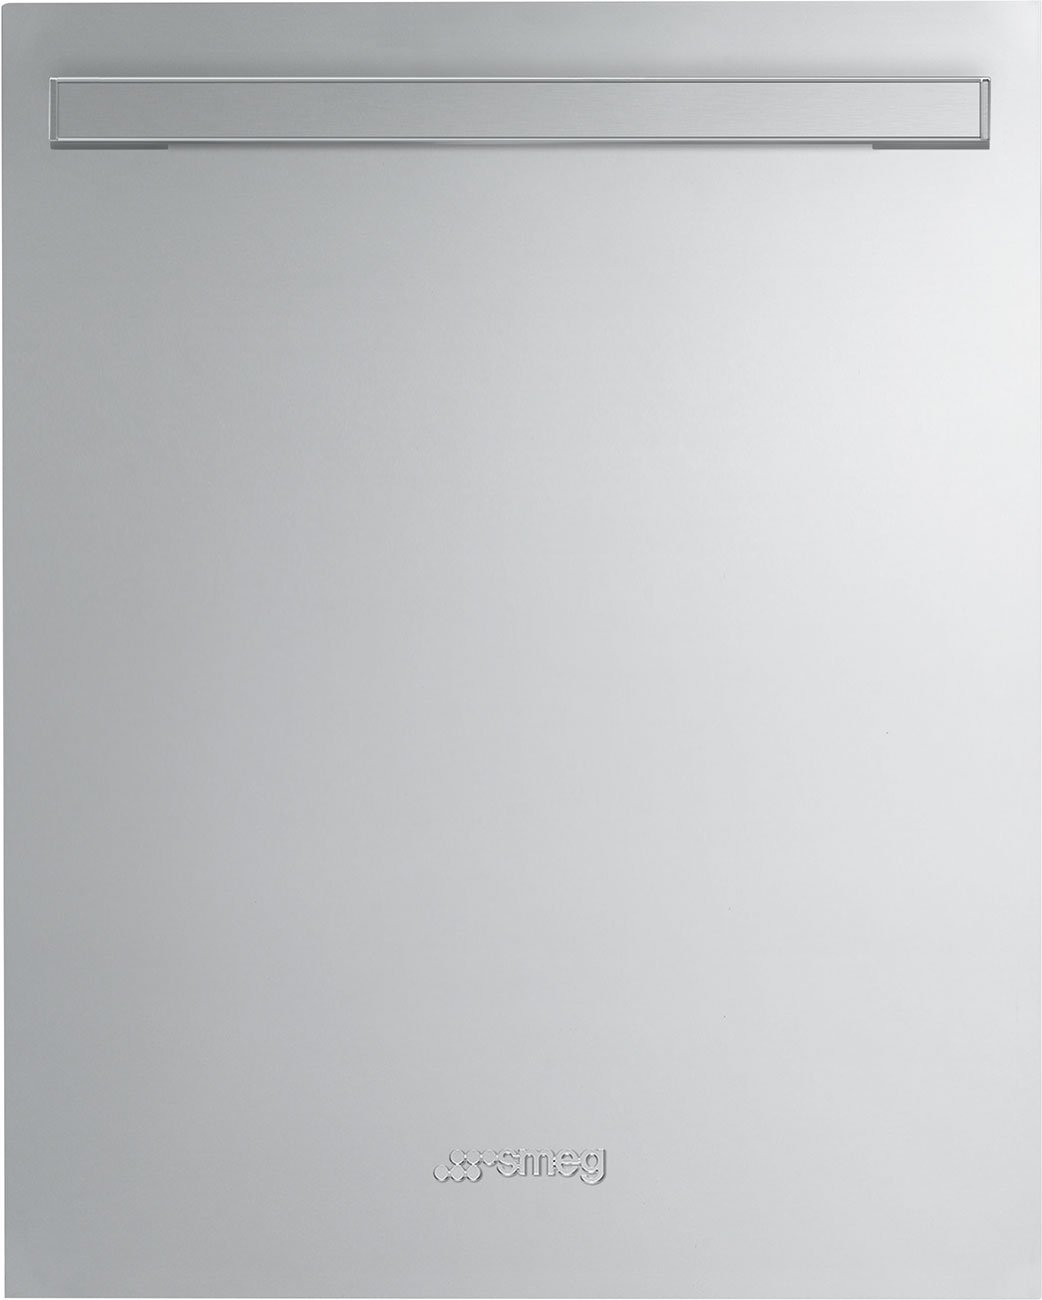 Smeg - Portofino Fingerprint-Proof Stainless Steel Dishwasher Door Panel - KIT86PORTX